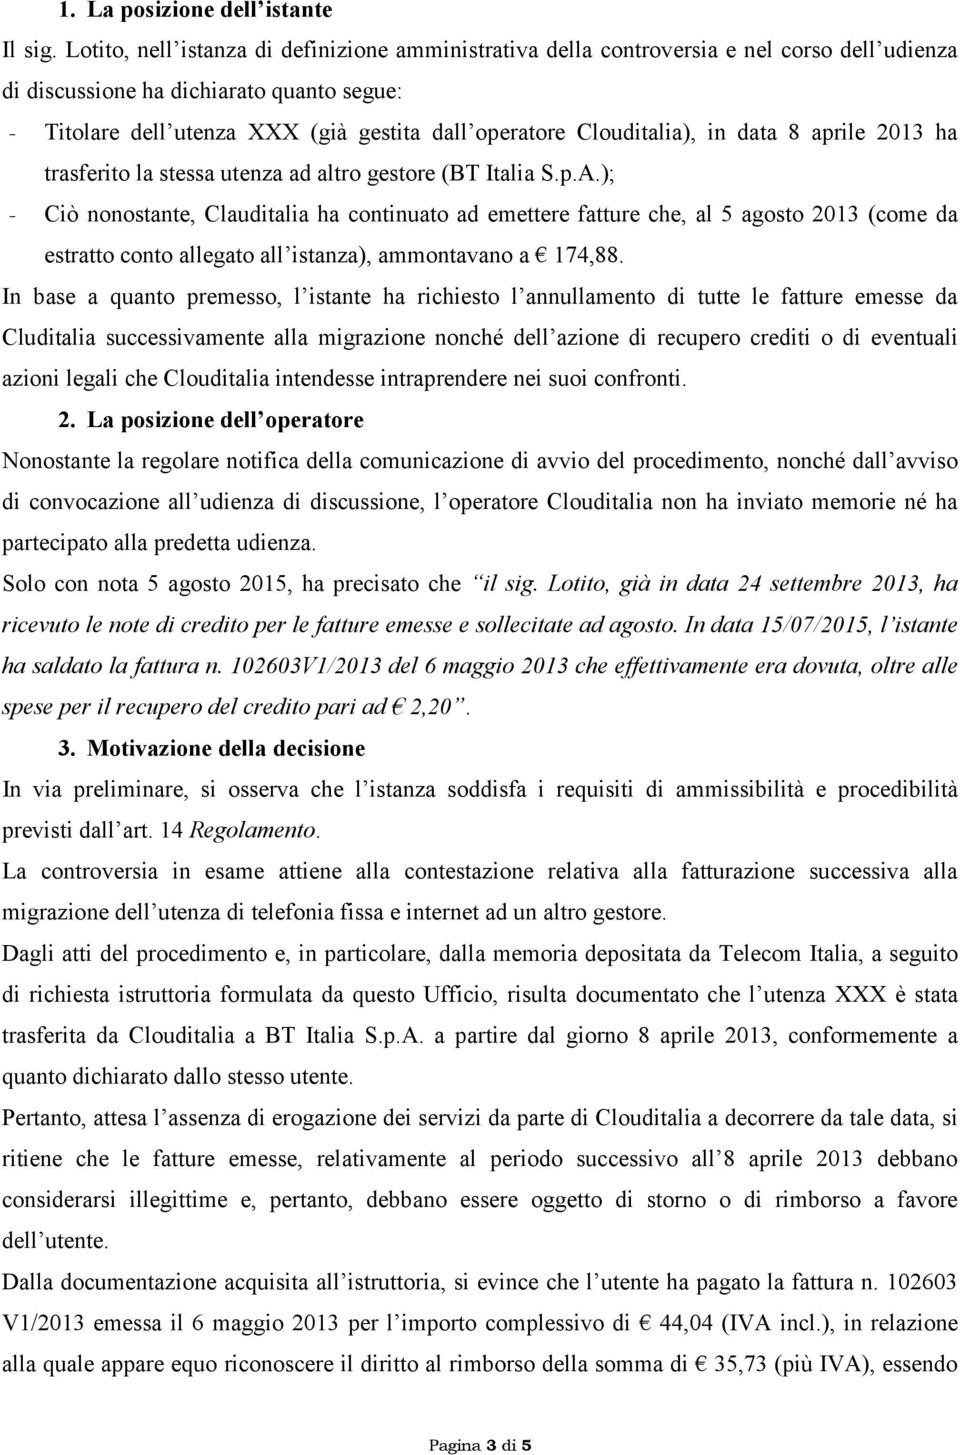 Clouditalia), in data 8 aprile 2013 ha trasferito la stessa utenza ad altro gestore (BT Italia S.p.A.